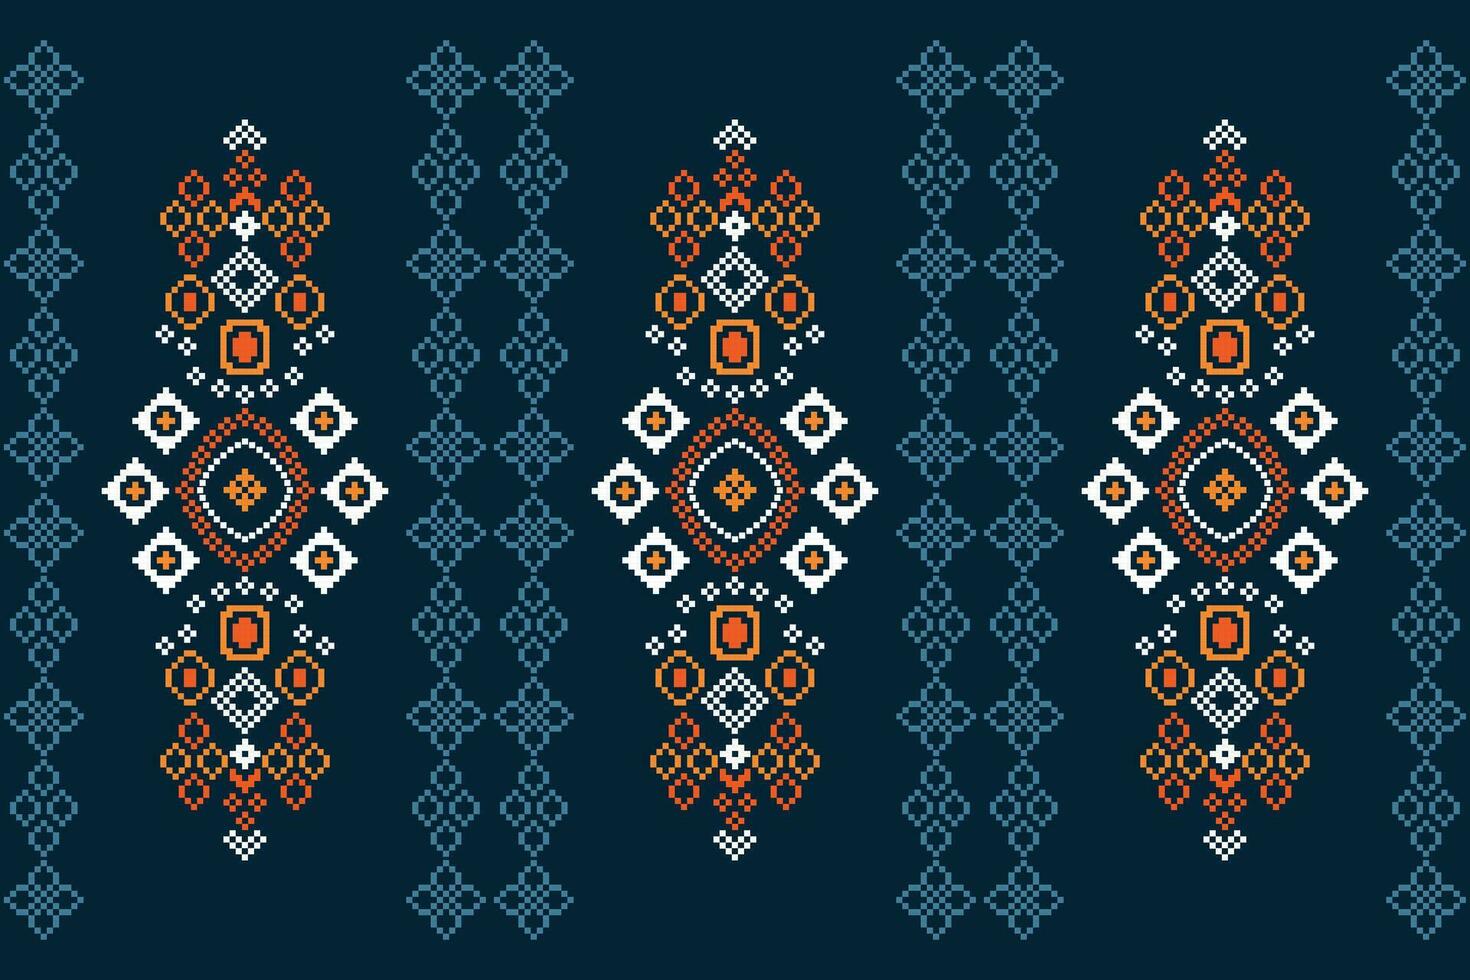 etnisch meetkundig kleding stof patroon kruis steek.ikat borduurwerk etnisch oosters pixel patroon blauw achtergrond. abstract,vector,illustratie. textuur,kleding,lijst,decoratie,motieven,zijde behang. vector